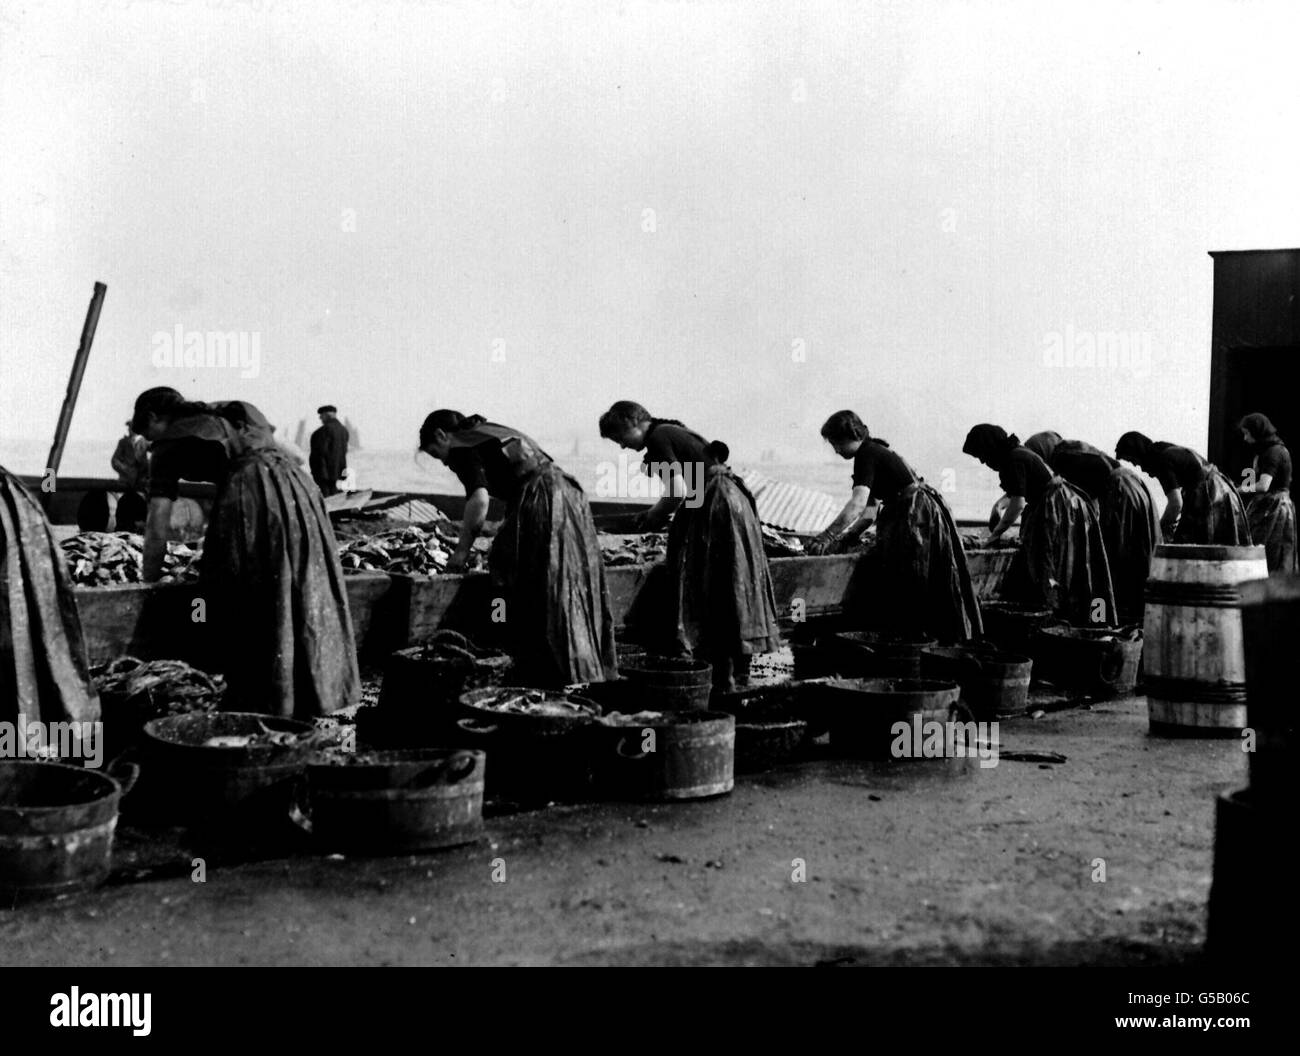 DIE HERINGINDUSTRIE 1911: Schottische Lasse arbeiten hart daran, Heringe im Hafen von Lowestoft in Suffolk zu reinigen und zu verpacken. Der Job ist Saisonarbeit für die schottischen Mädchen. Stockfoto